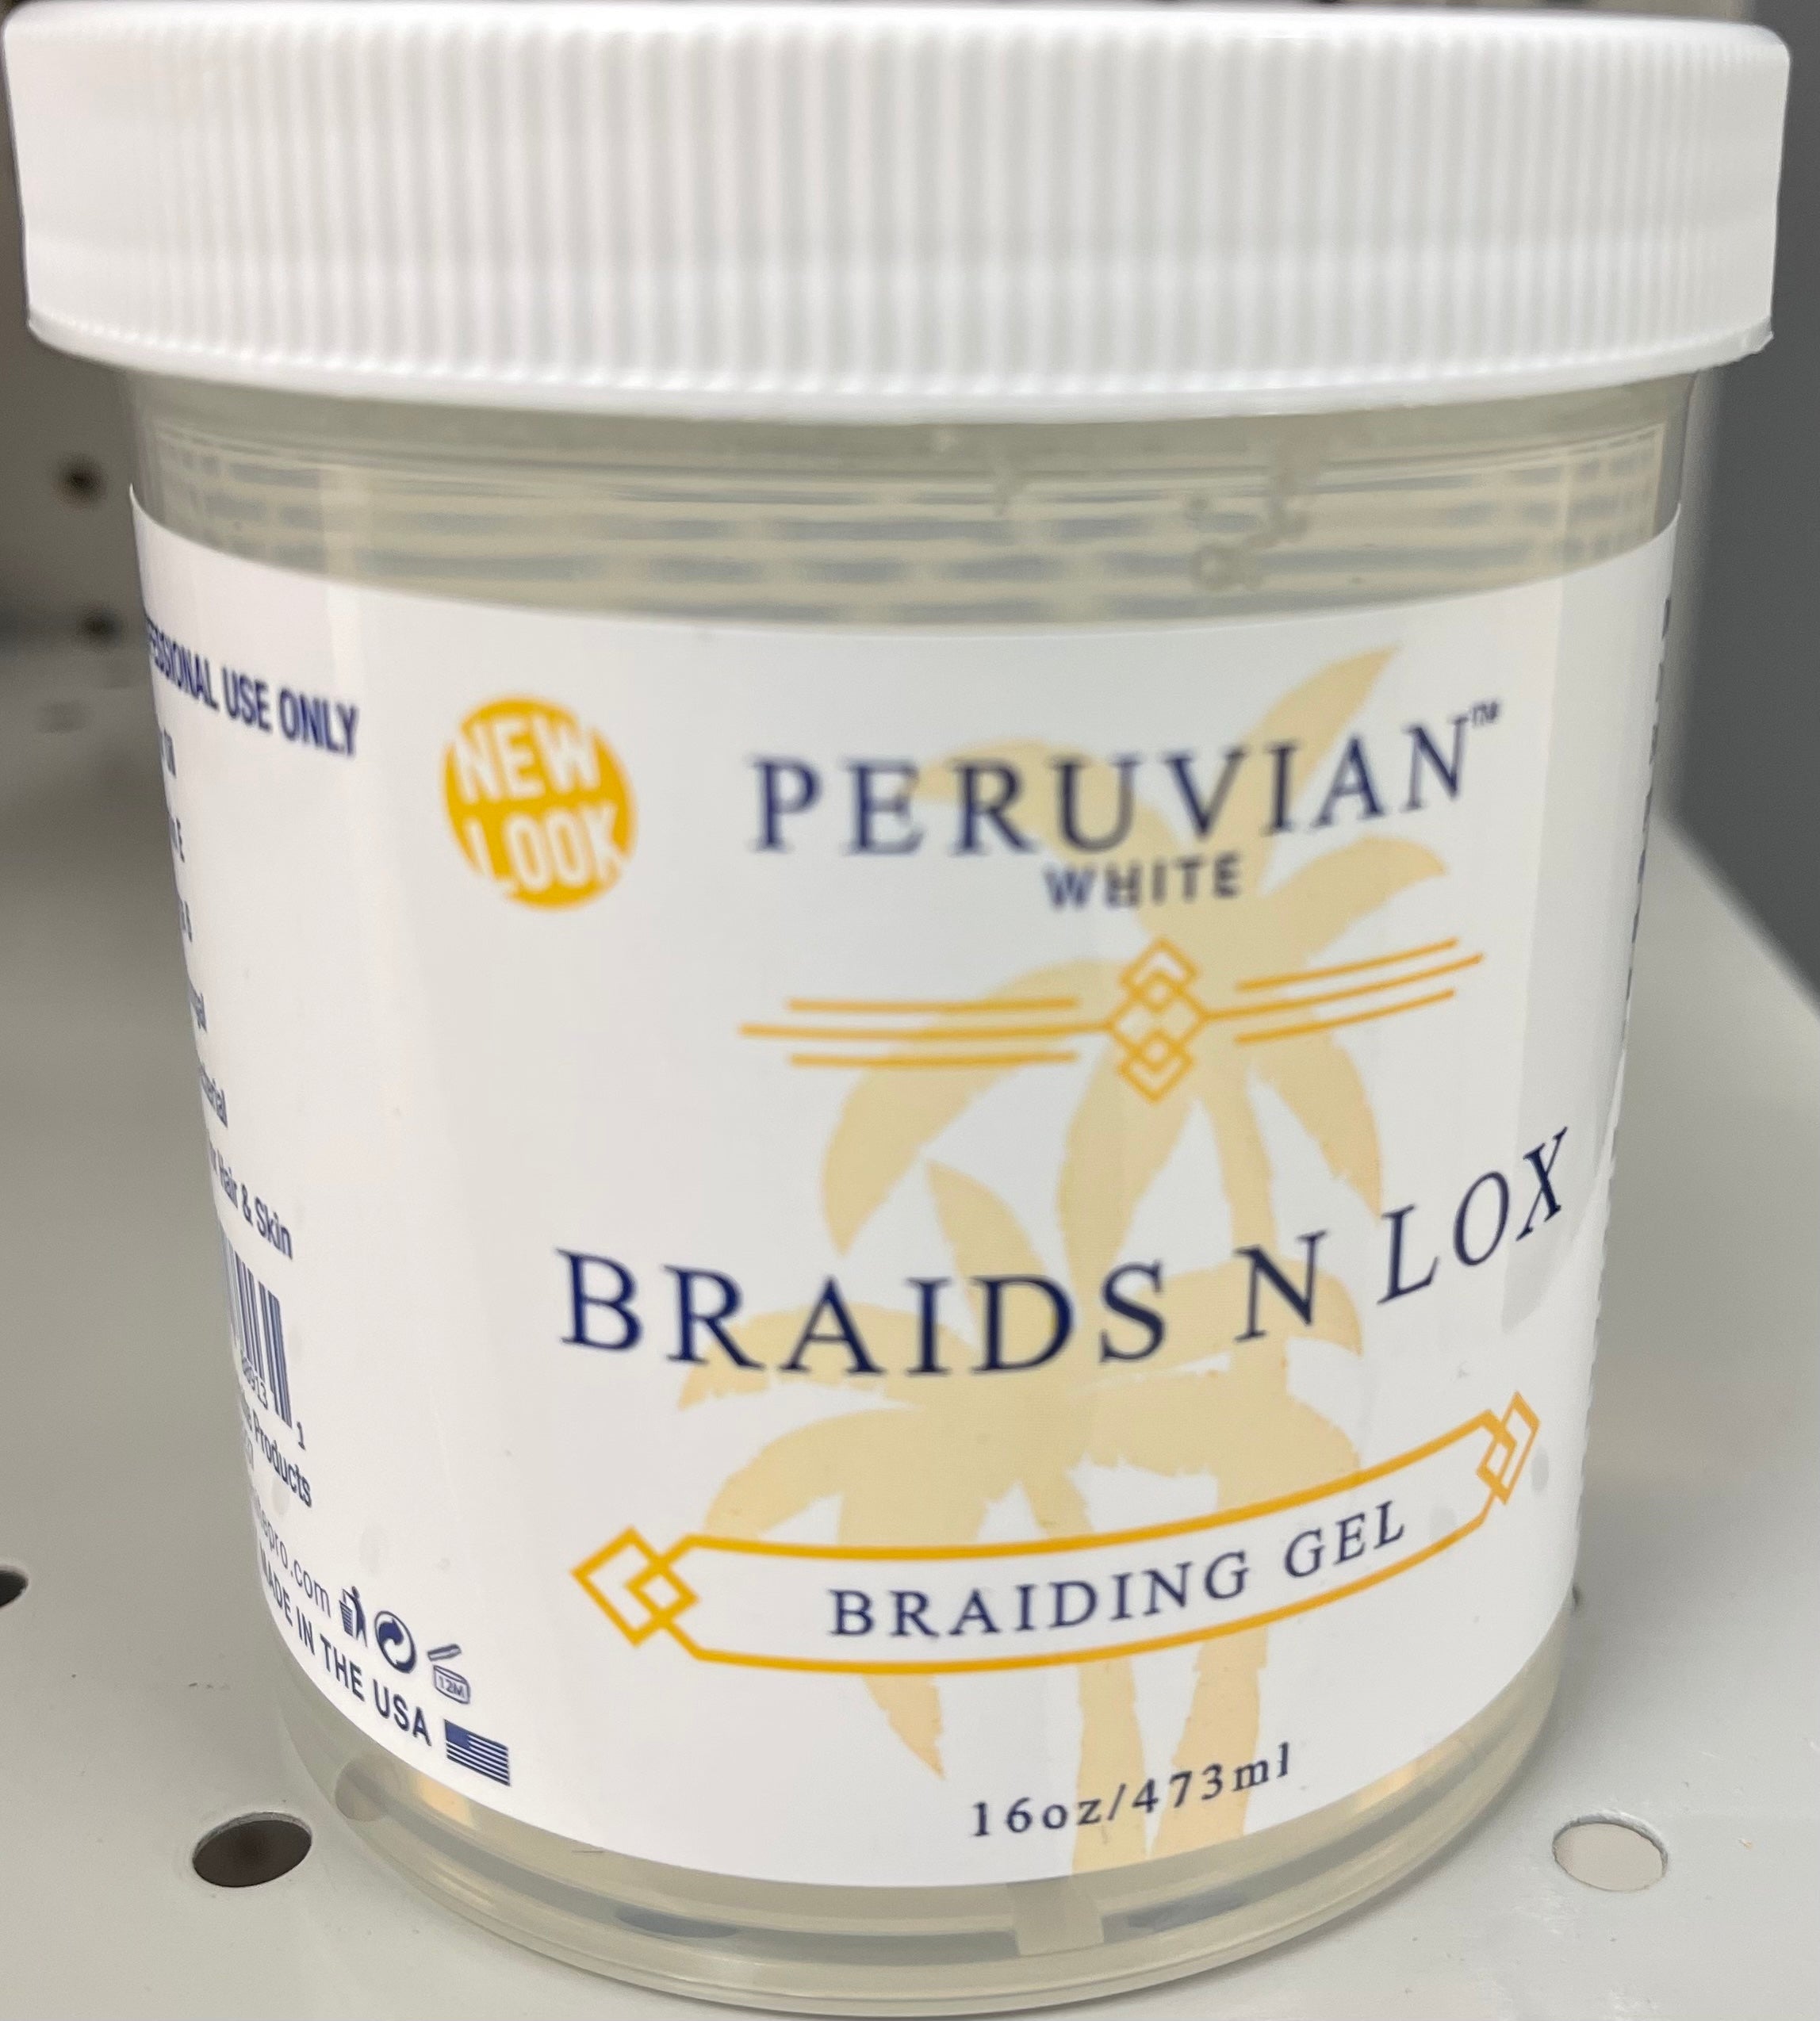 Peruvian White Braids N Lox Braiding Gel